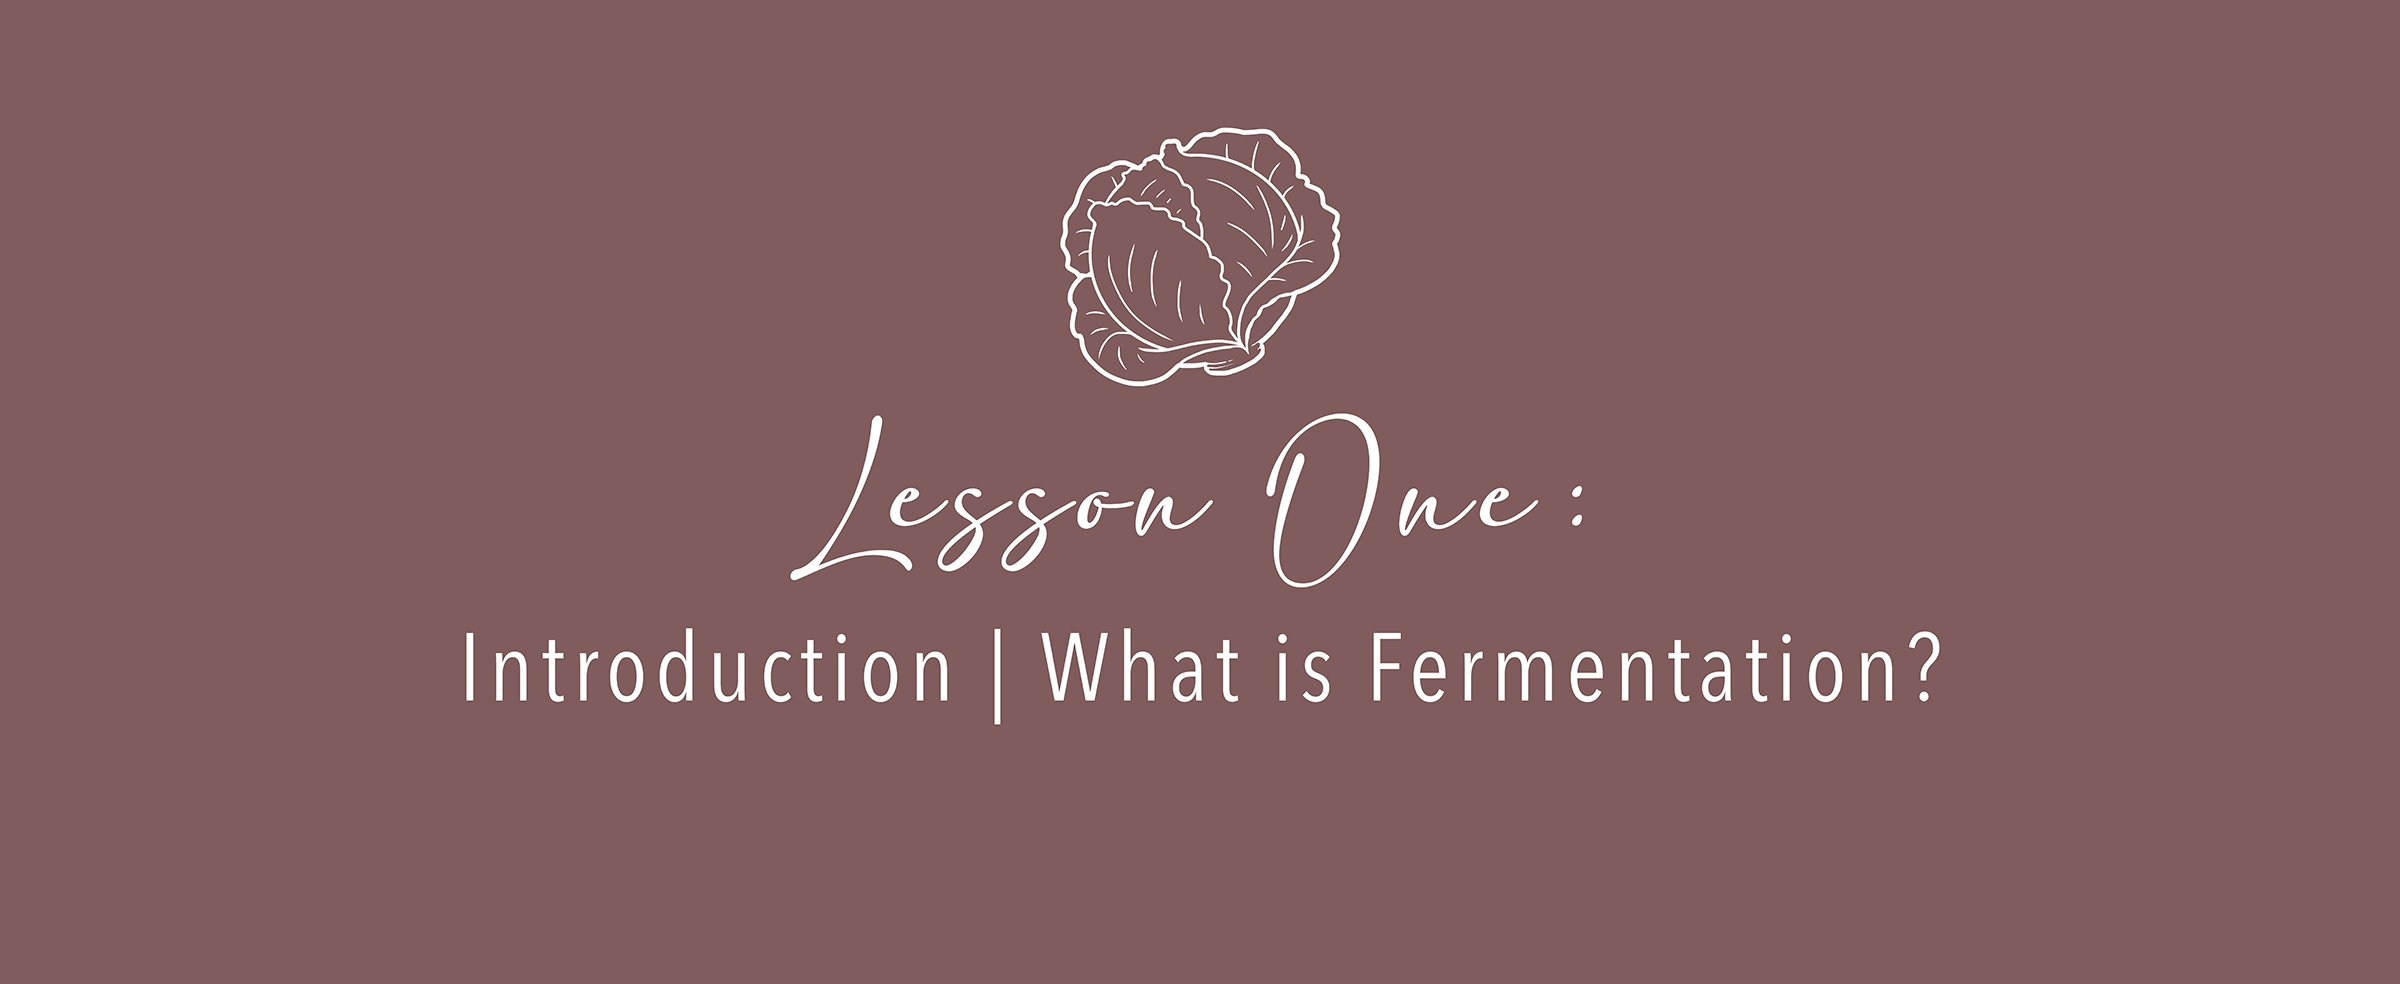 fermentation_Lesson1.jpg